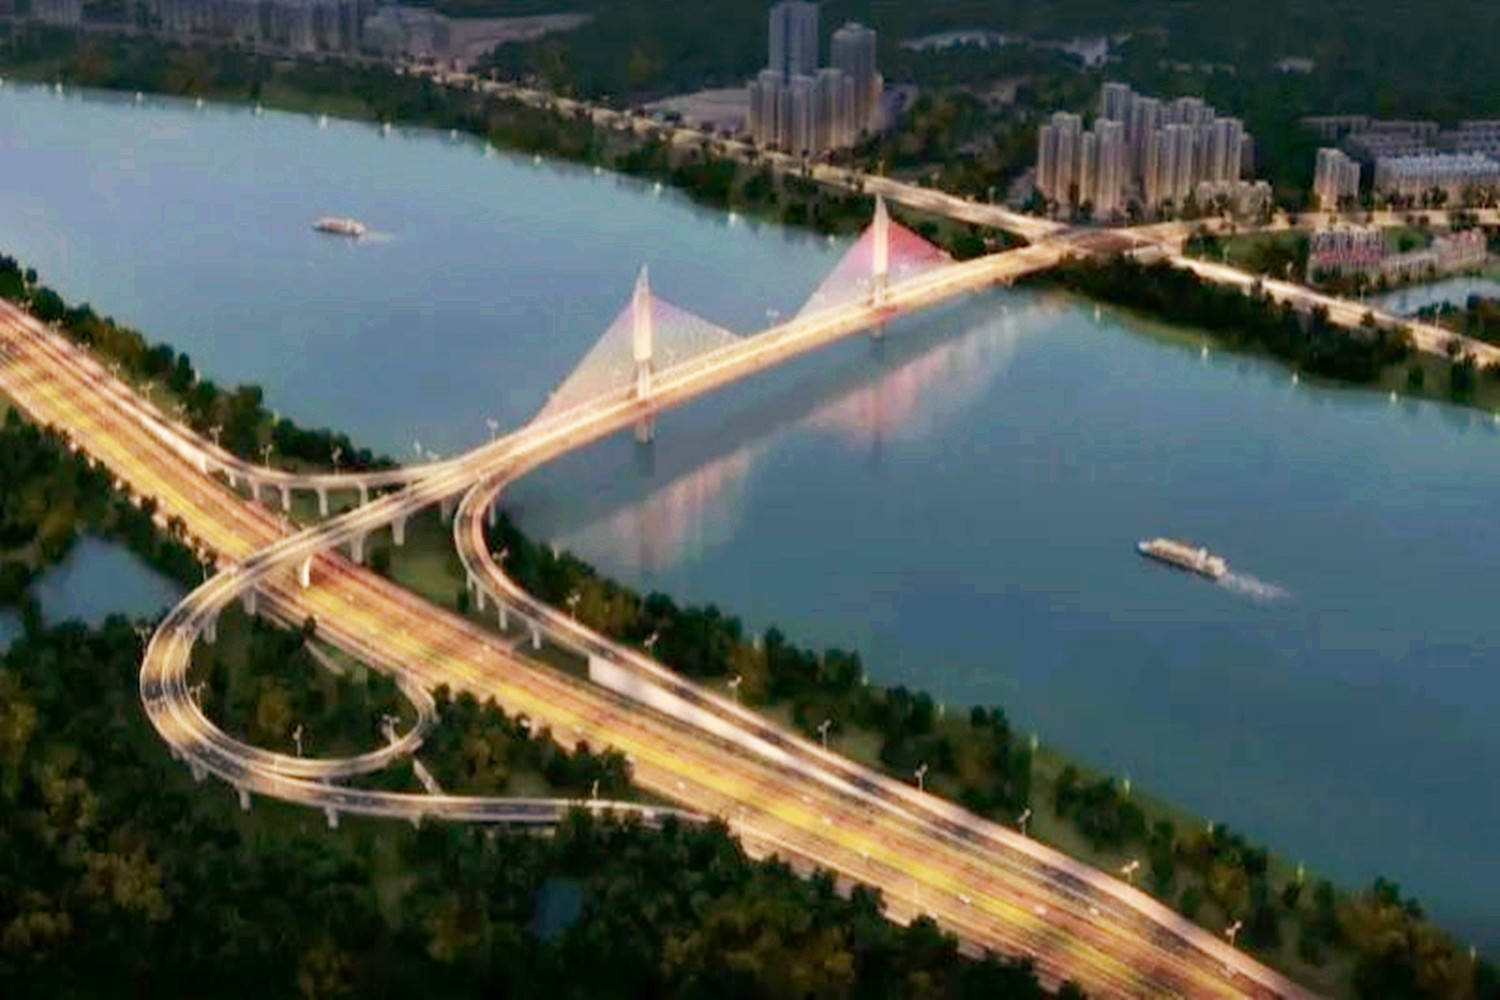 原创惠州在建一座跨江大桥,总投资约7.7亿元,双向六车道规模